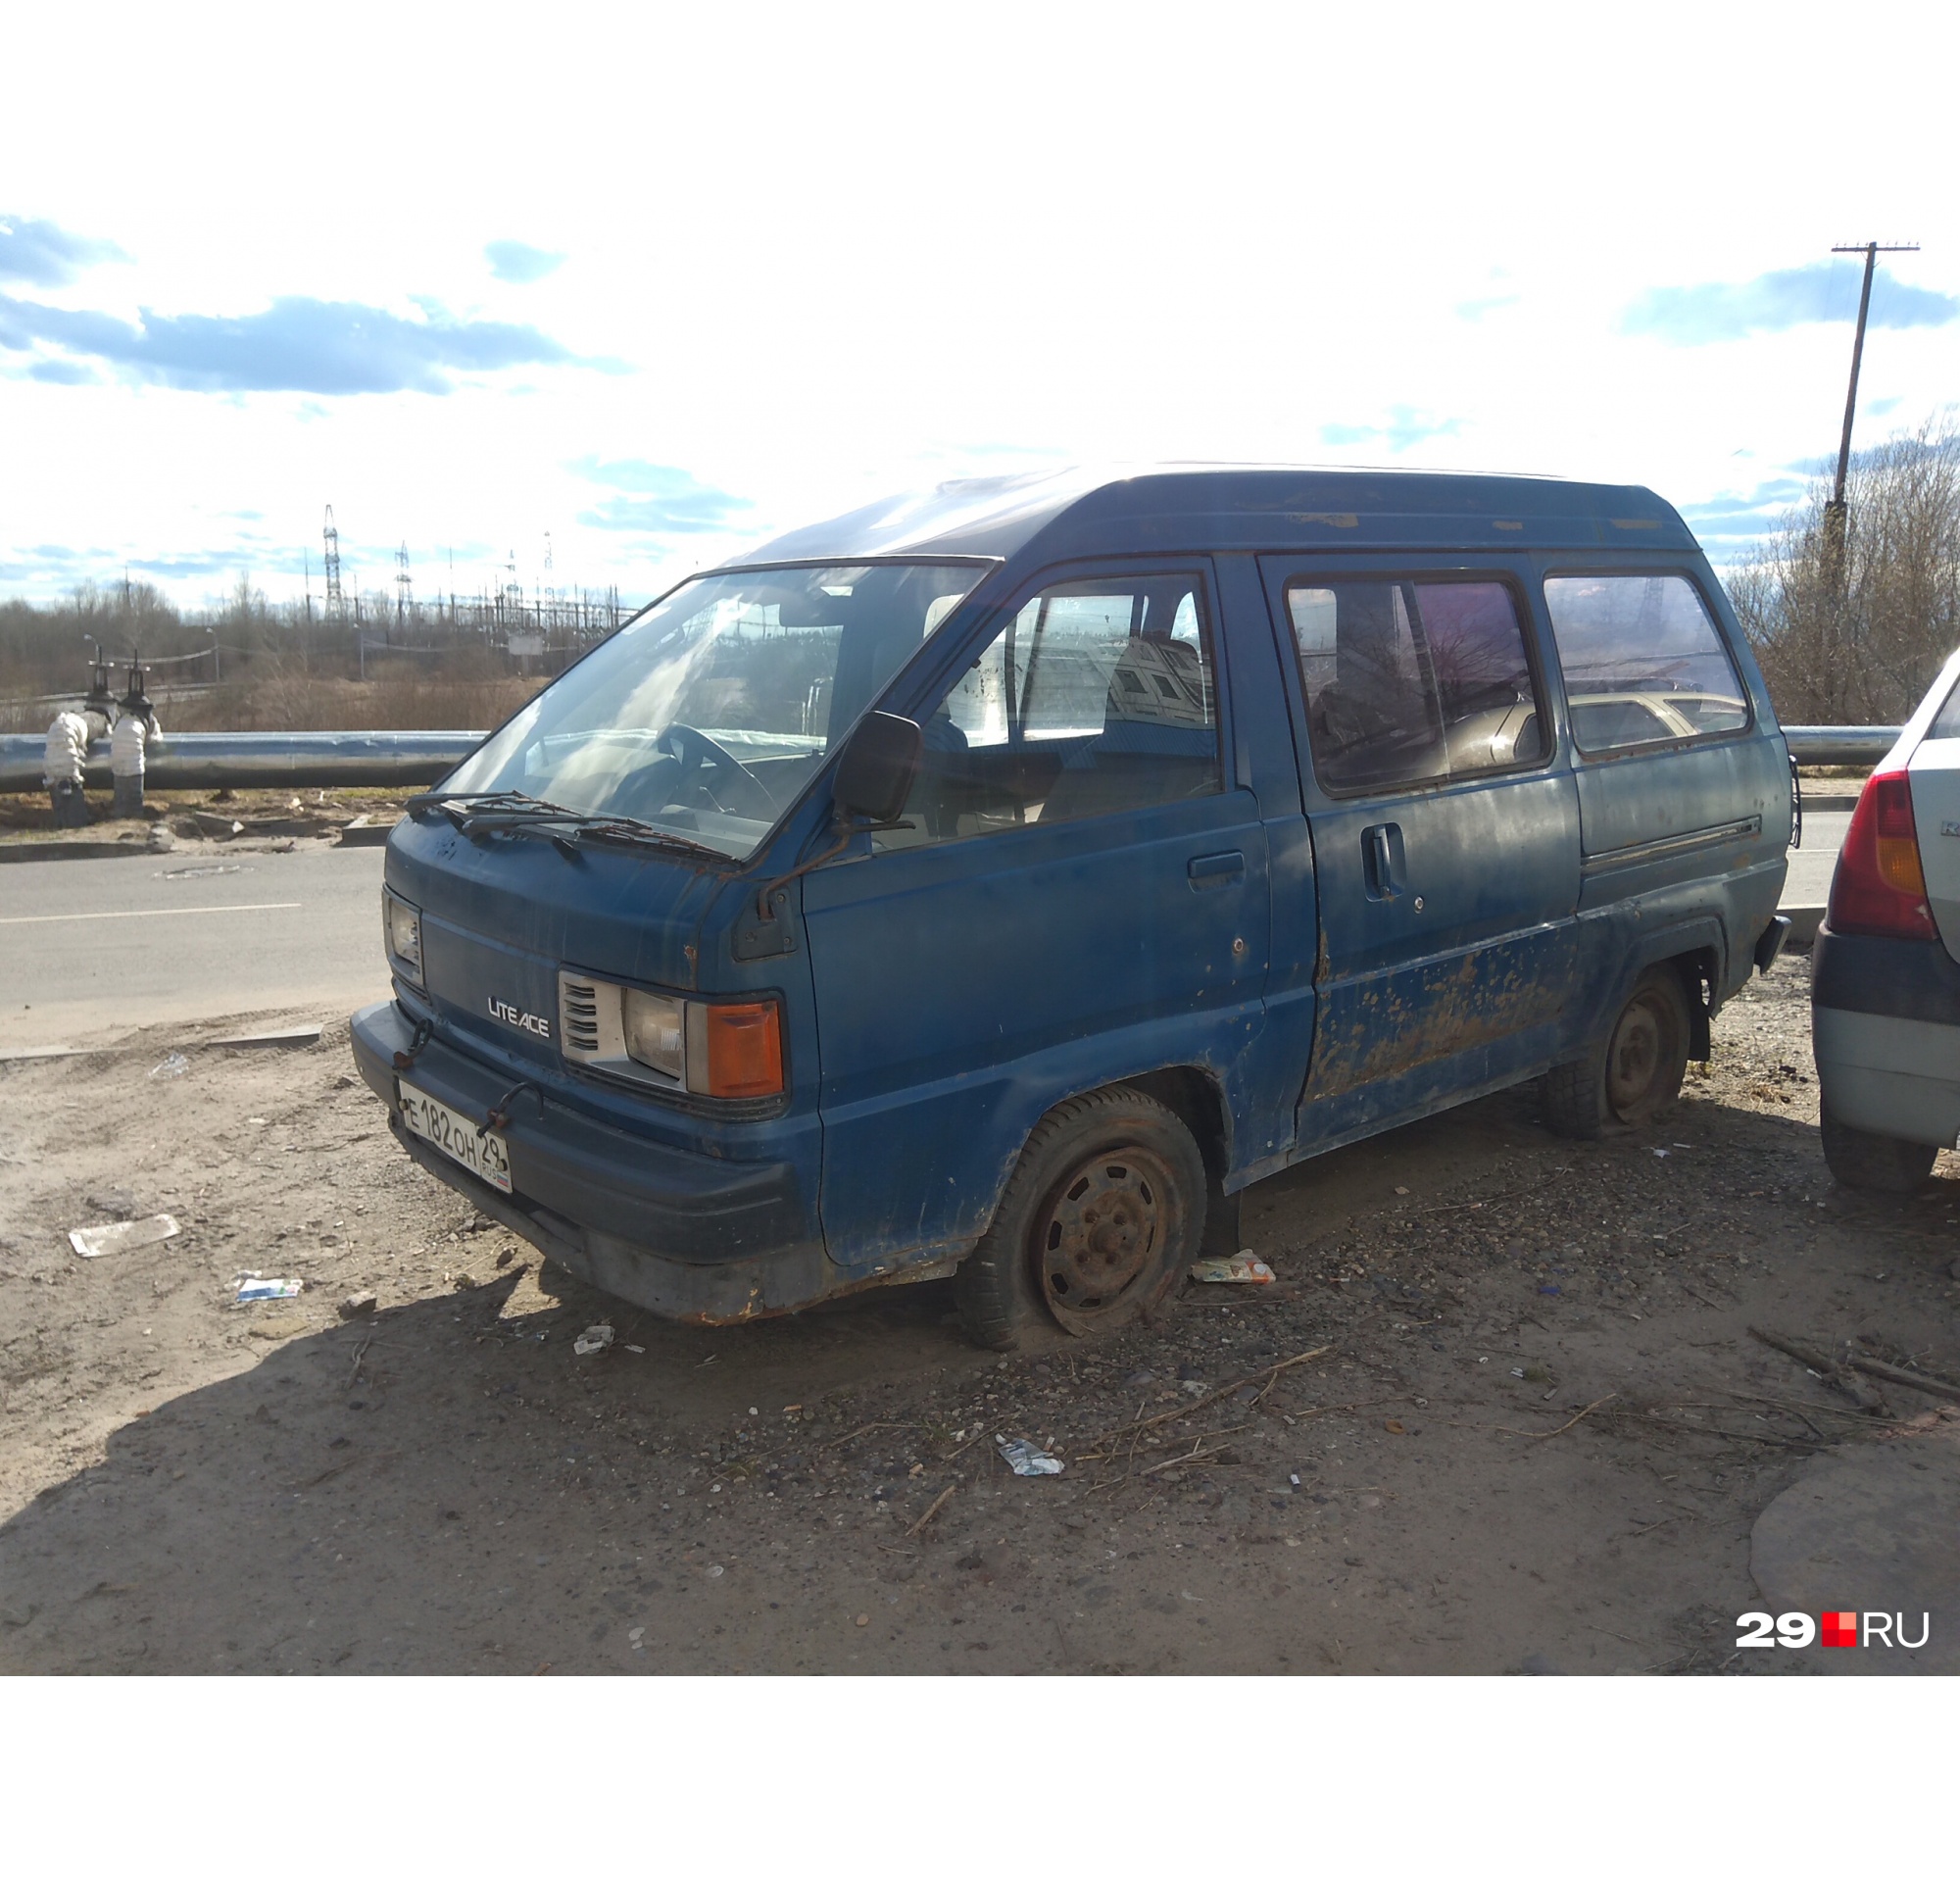 Брошенный автомобиль во дворе: что делать и куда жаловаться в Архангельске